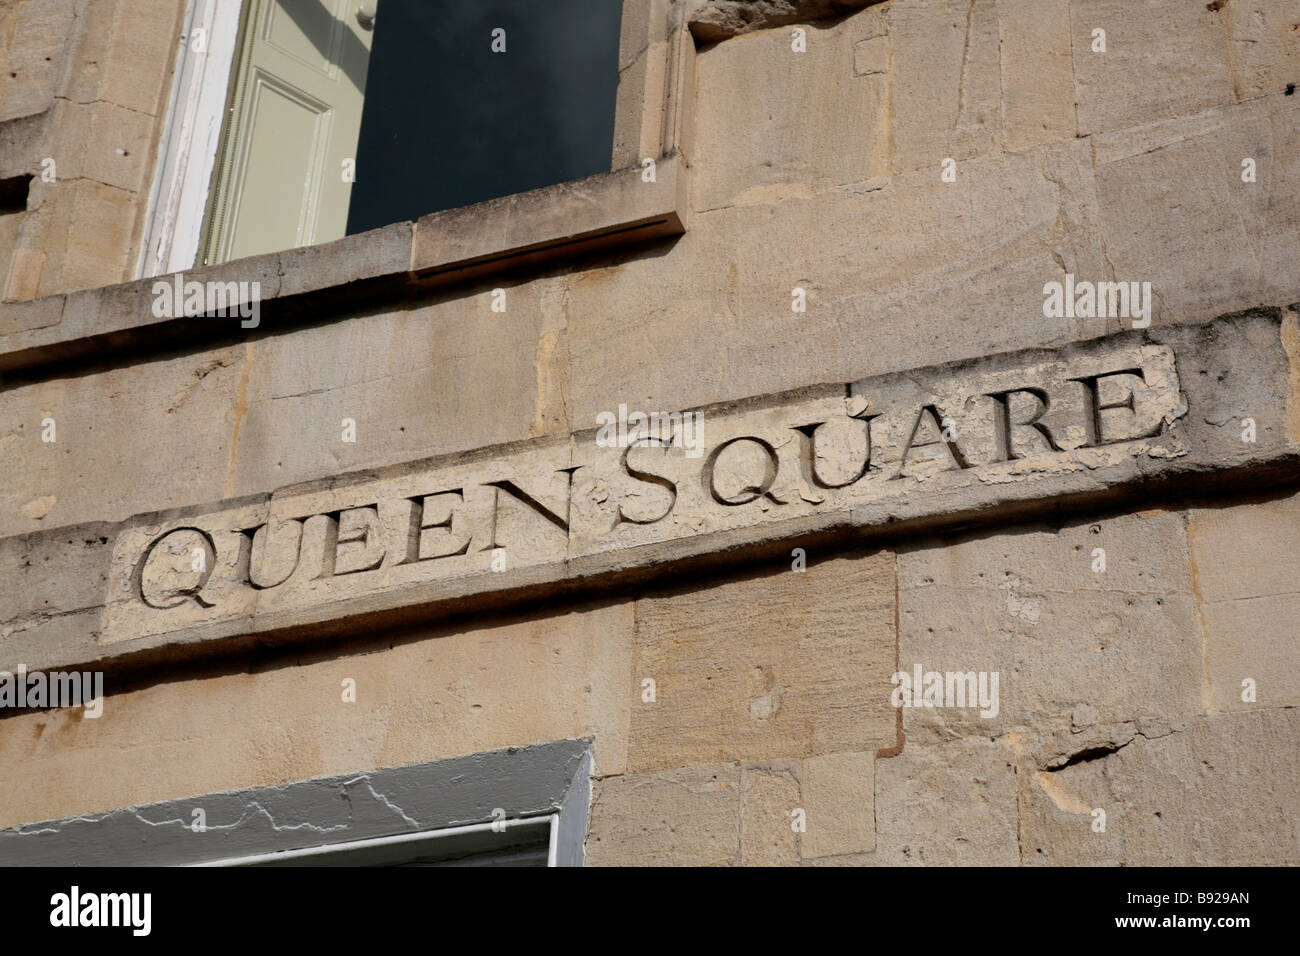 Queen Square, Street sign sur mur de pierre baignoire, baignoire, Somerset, UK Banque D'Images